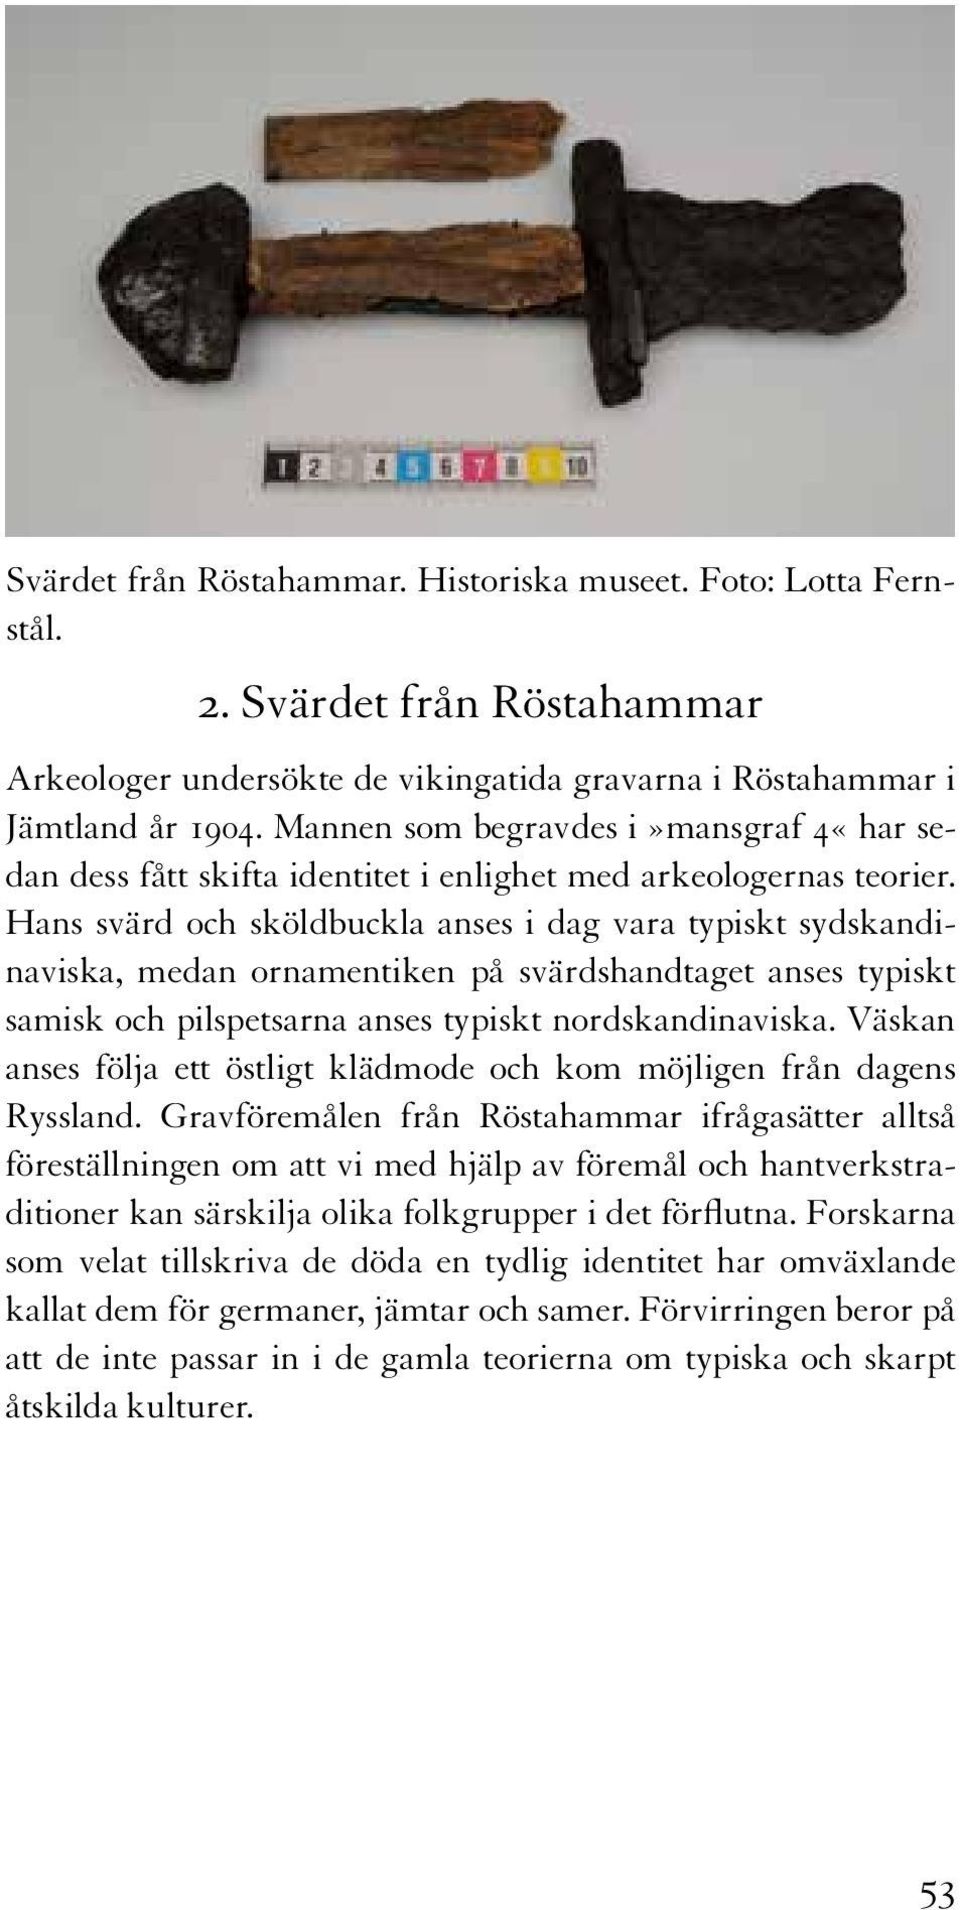 Hans svärd och sköldbuckla anses i dag vara typiskt sydskandinaviska, medan ornamentiken på svärdshandtaget anses typiskt samisk och pilspetsarna anses typiskt nordskandinaviska.